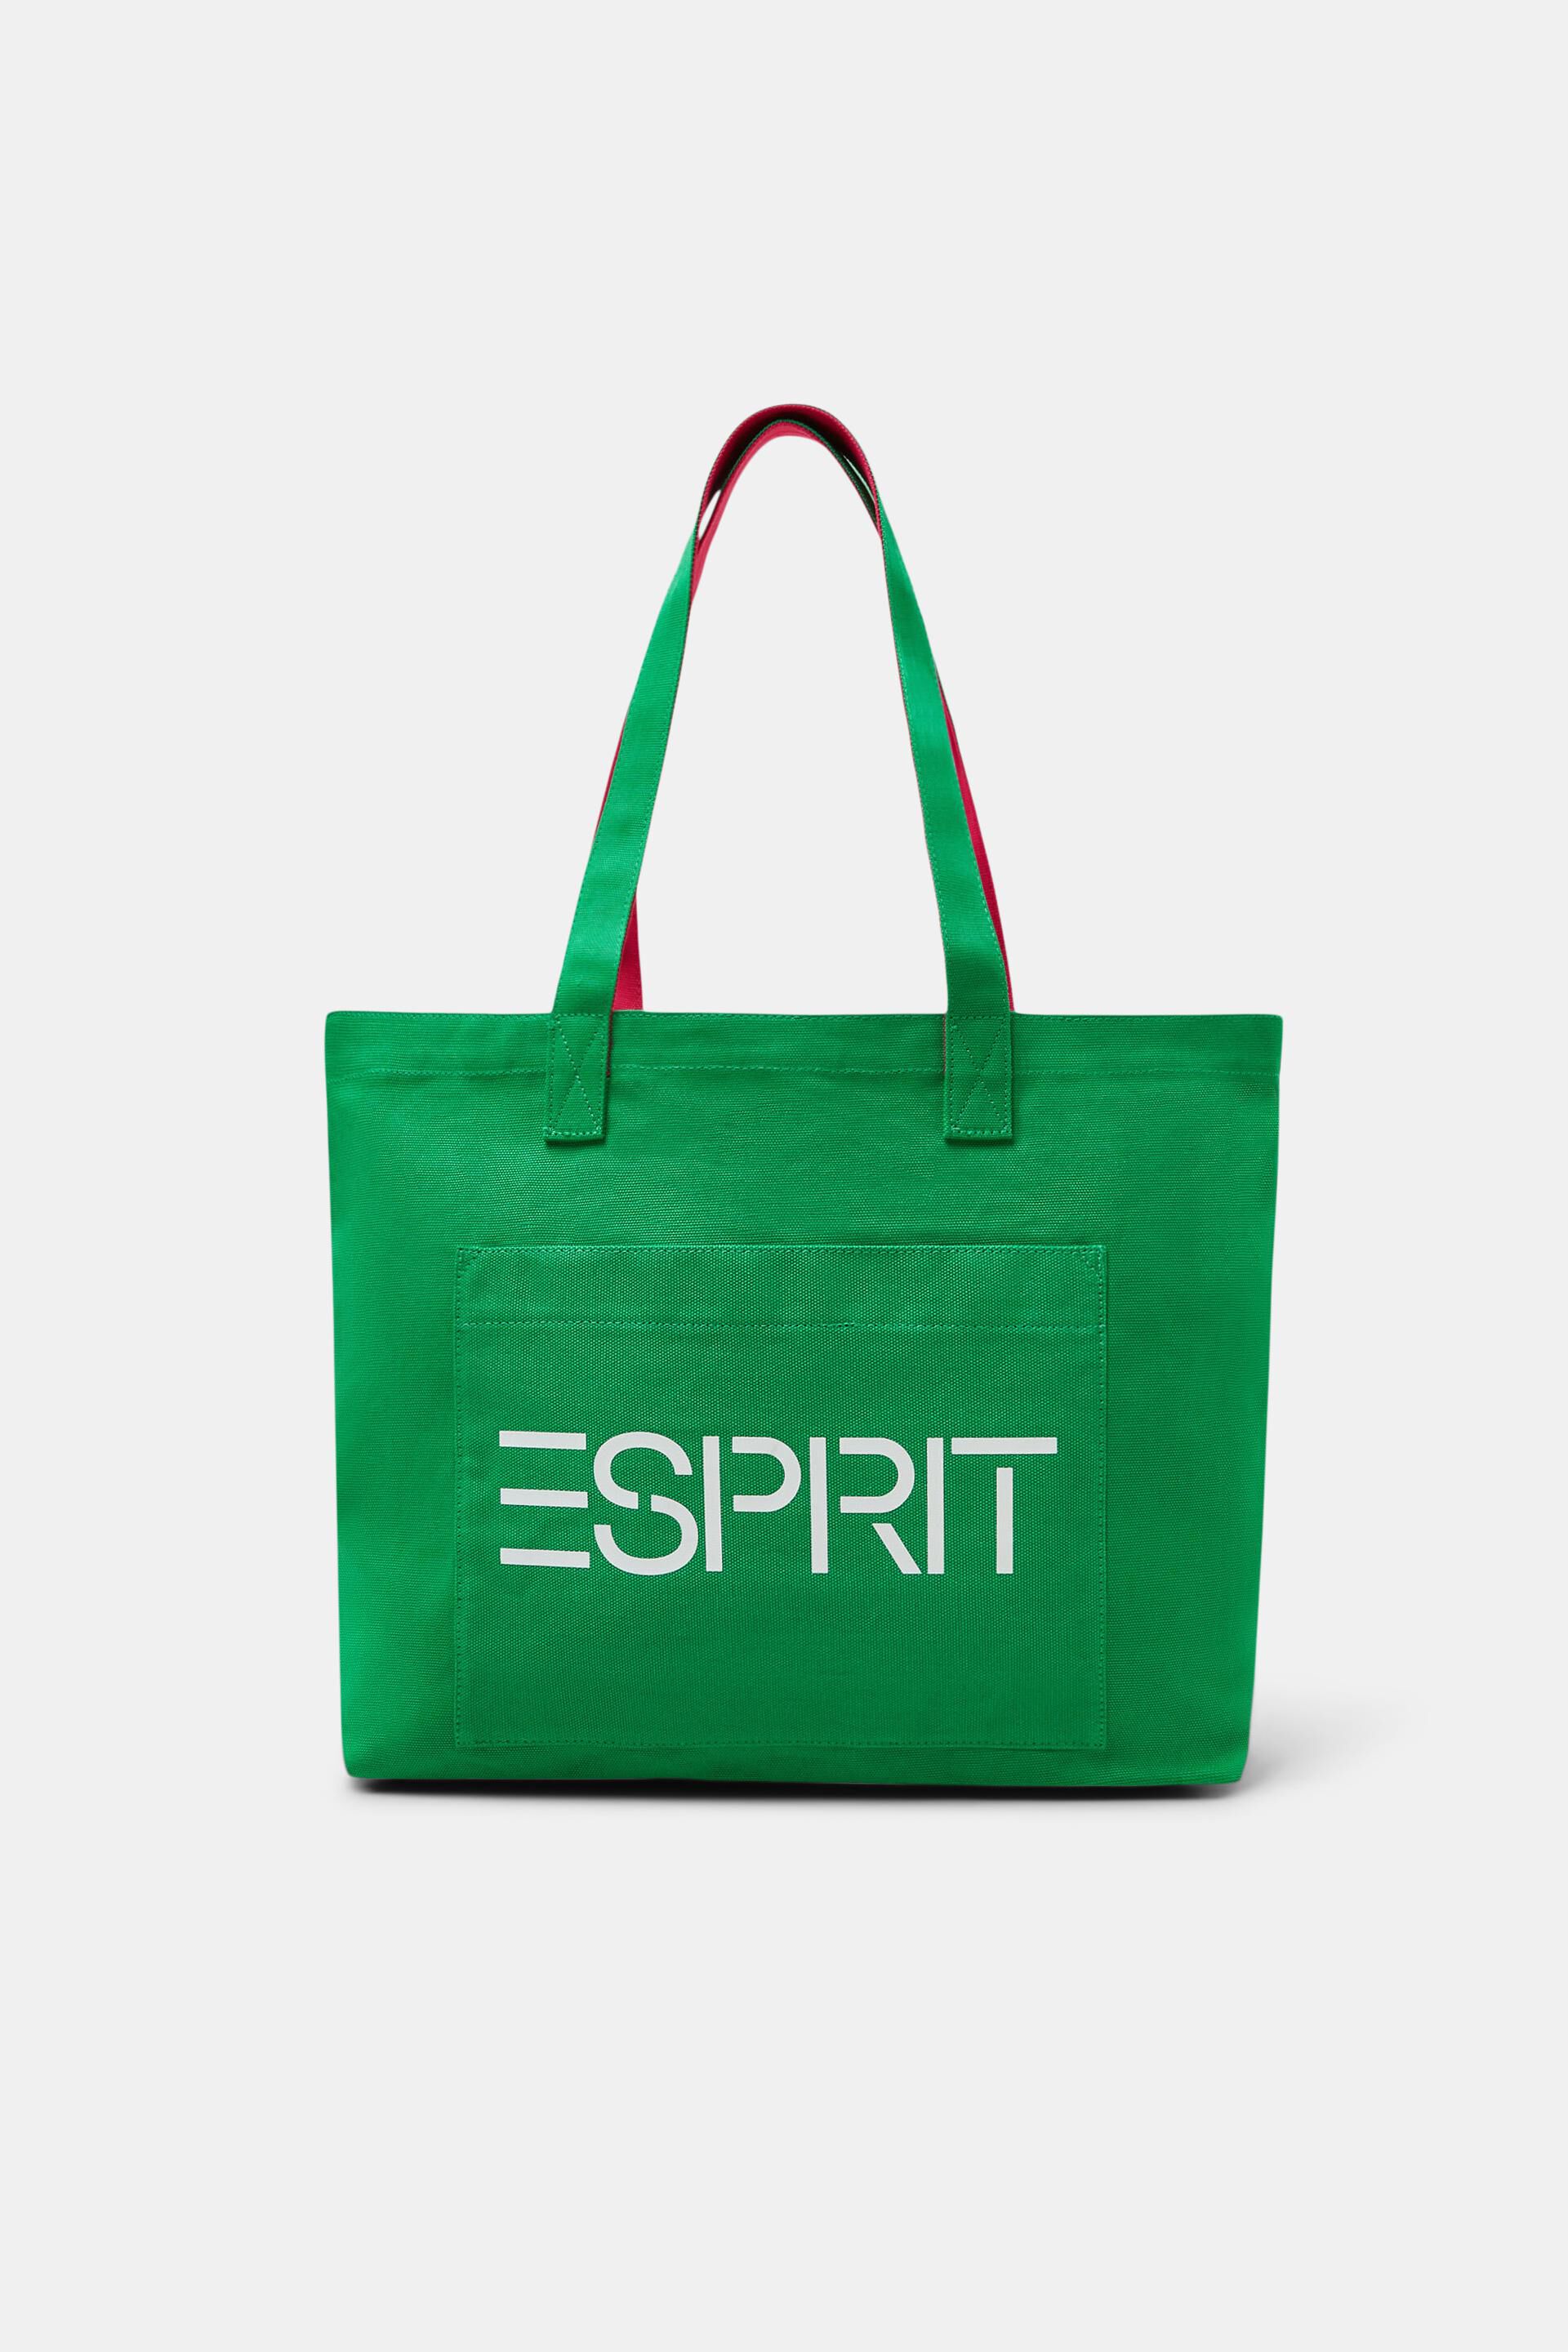 ESPRIT - Logo Canvas Tote Bag at our online shop